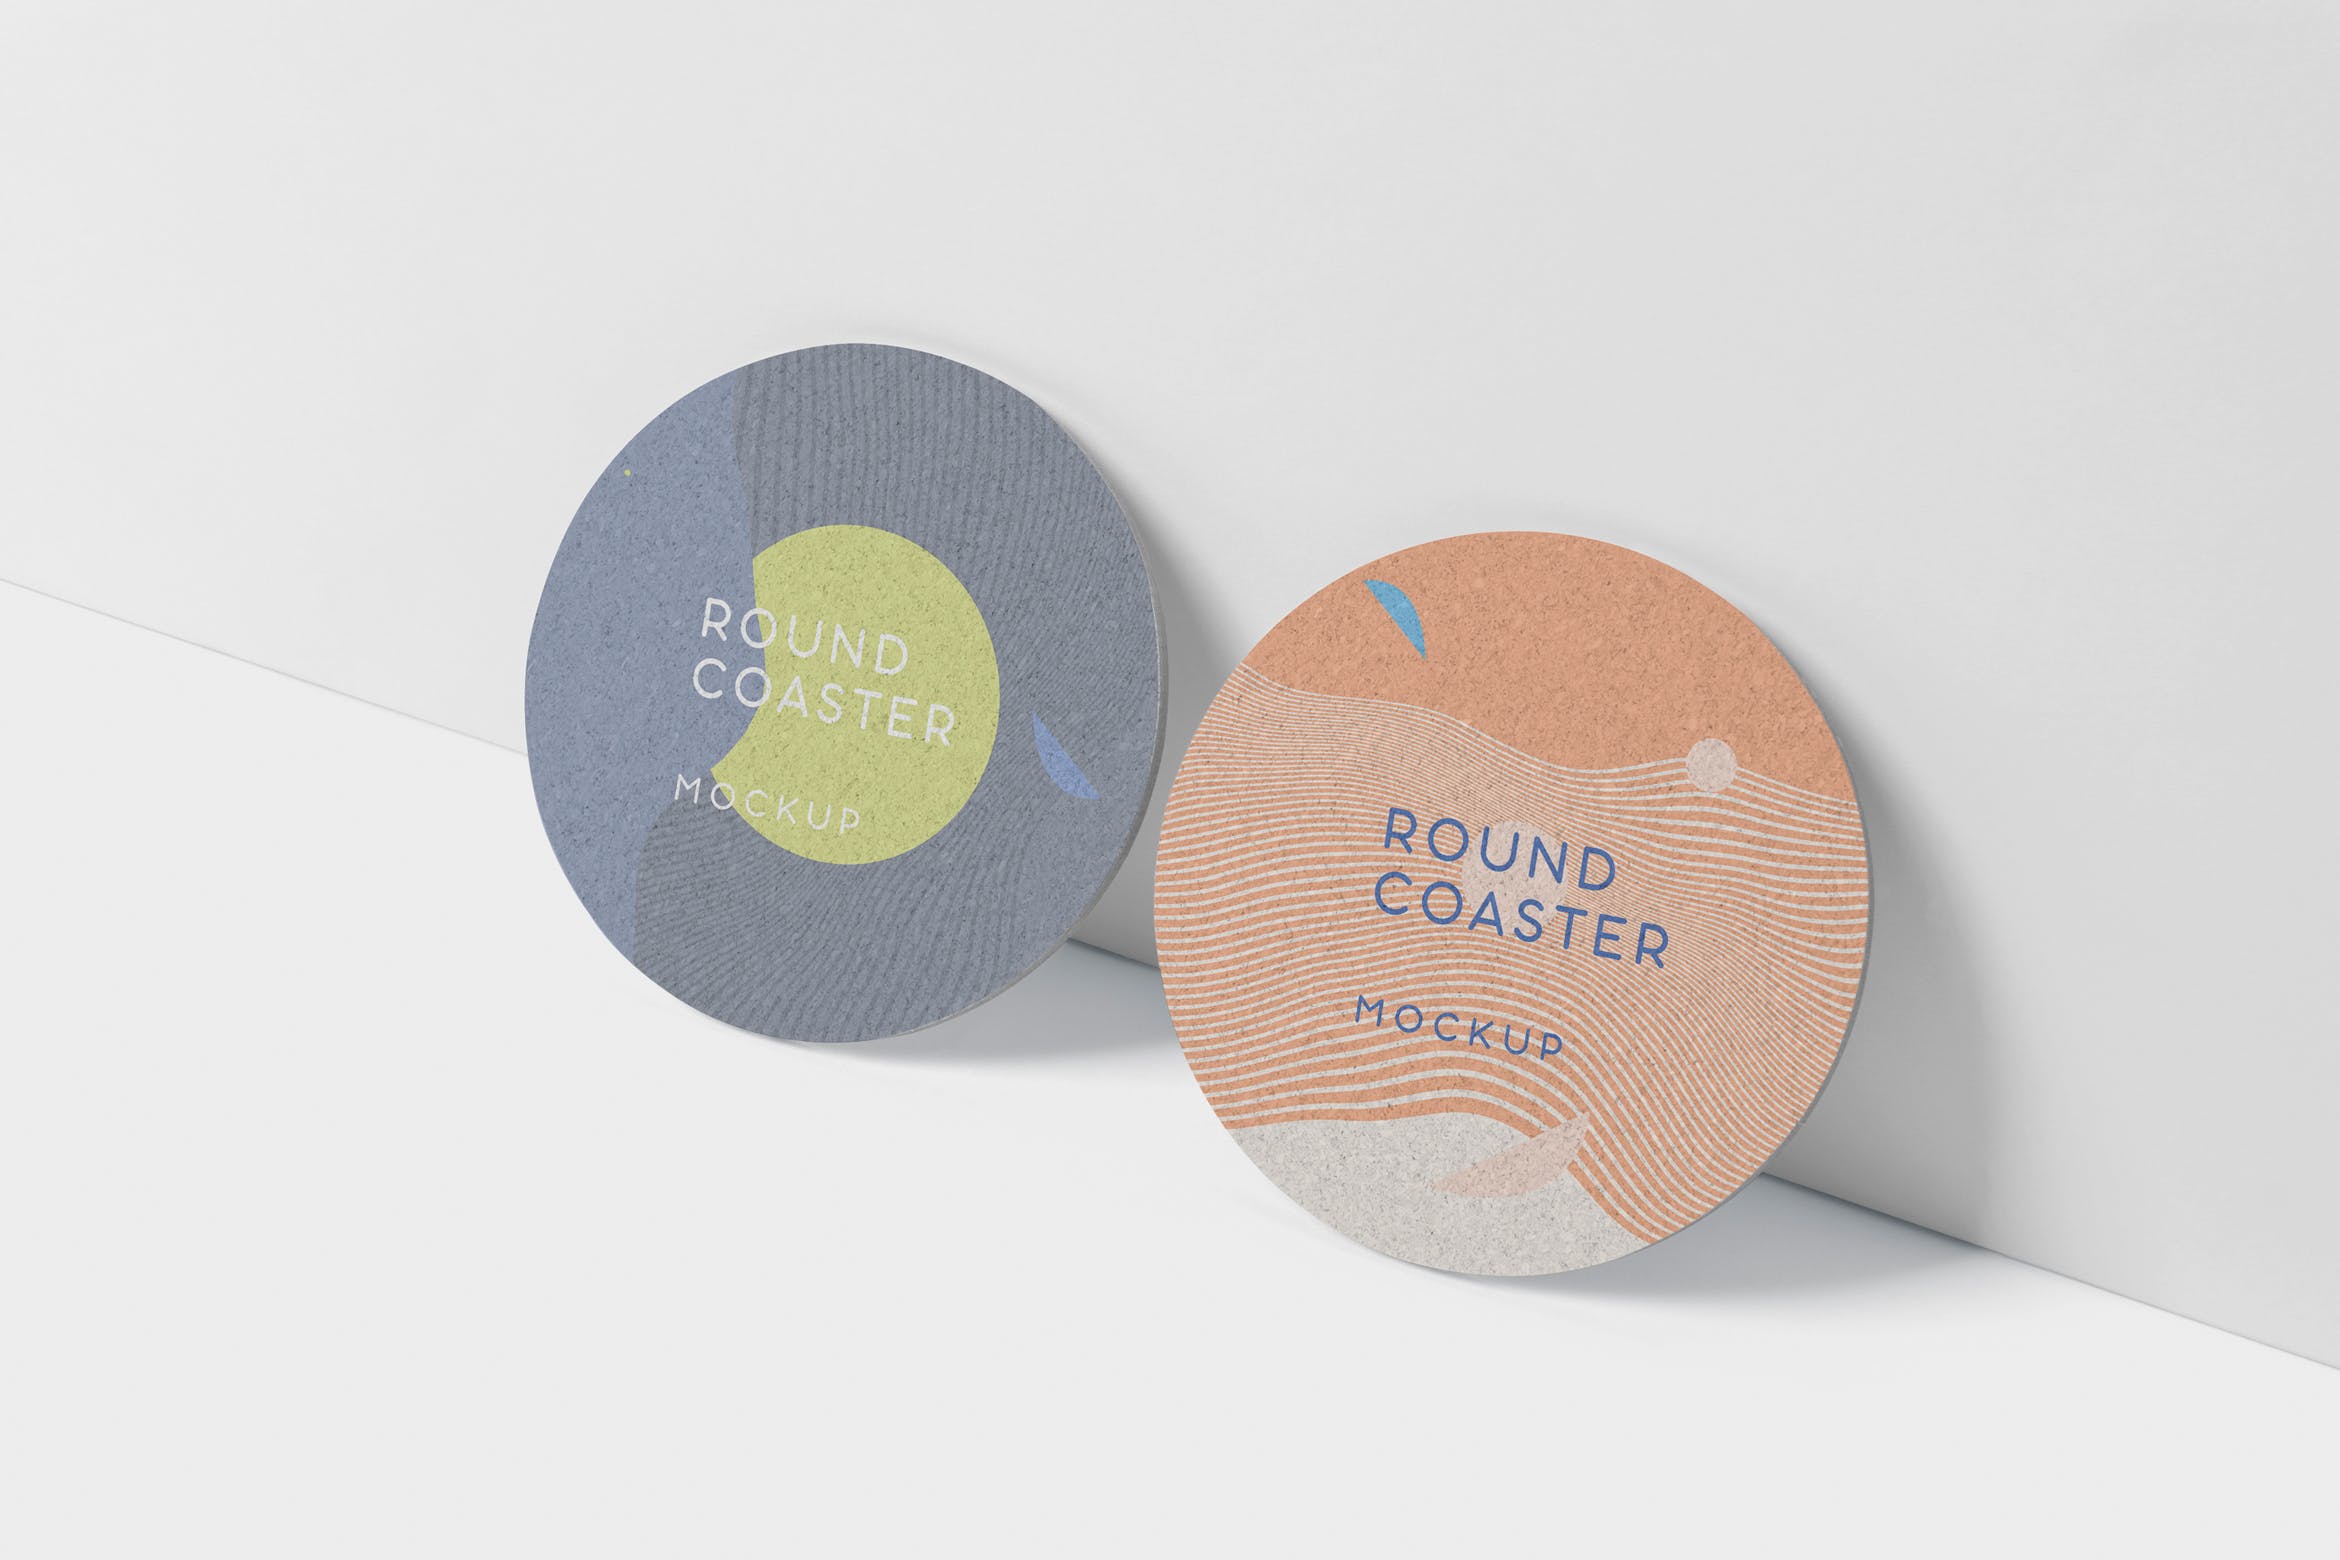 圆形杯垫图案设计效果图非凡图库精选 Round Coaster Mock-Up – Medium Size插图